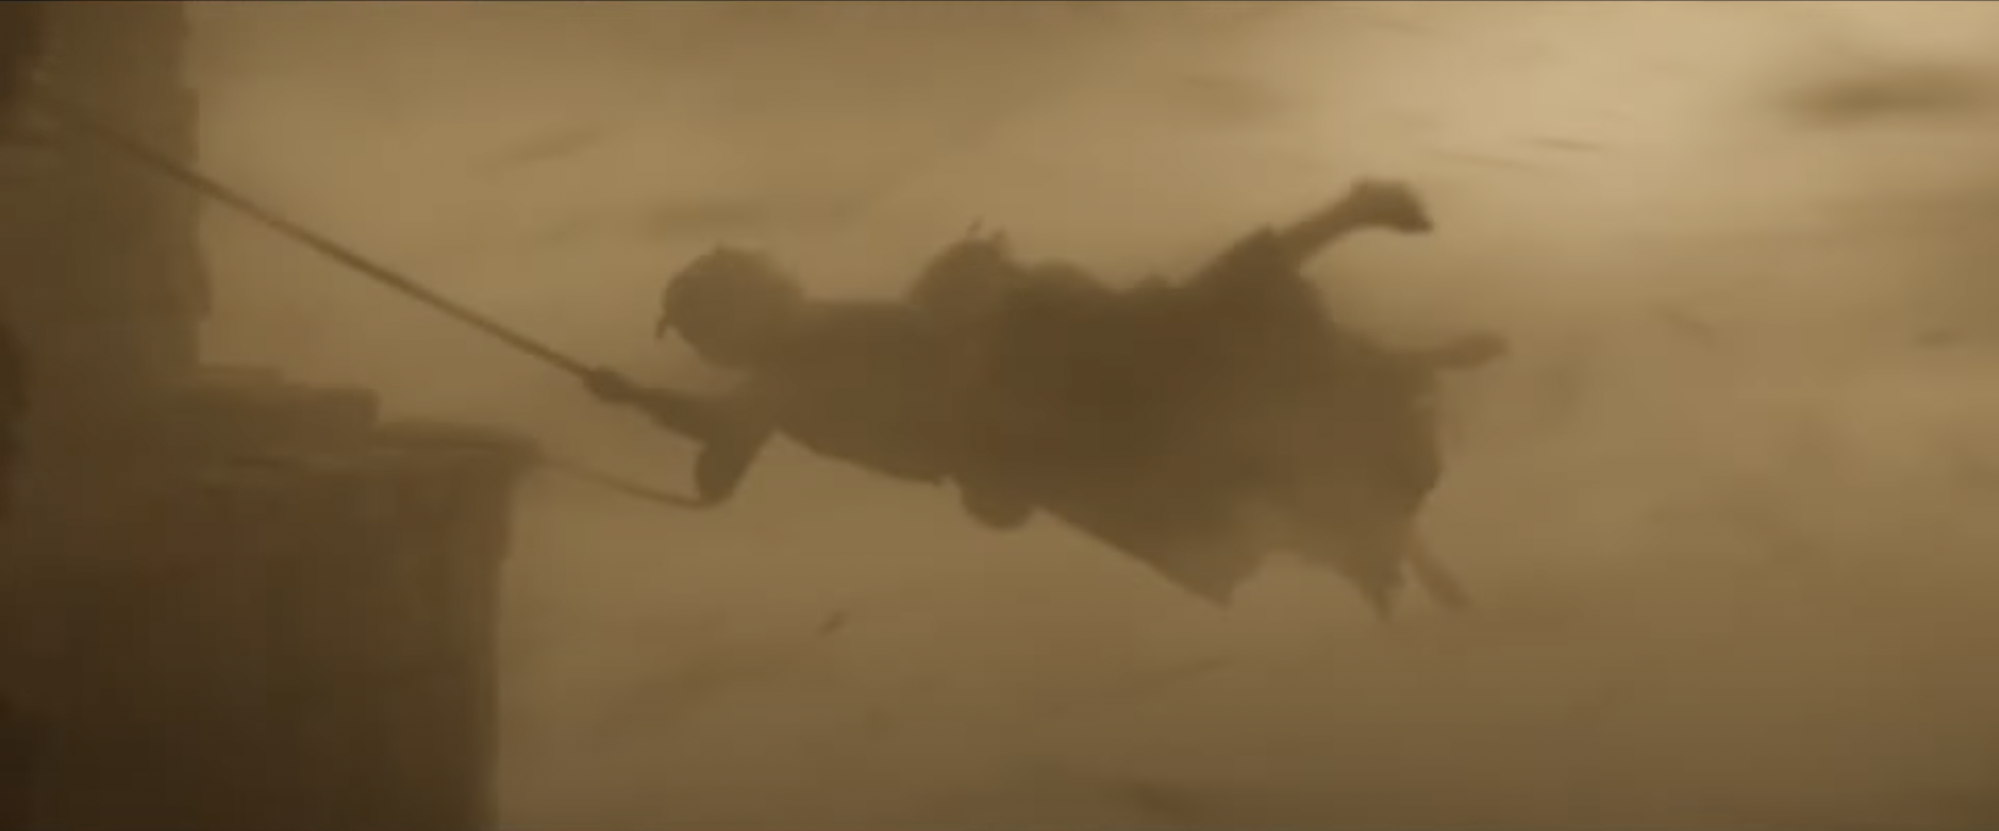 Markella Kavenagh dans le rôle de Nori Brandyfoot dans "Le Seigneur des Anneaux : Les Anneaux du Pouvoir", s'accrochant à une corde lors d'une énorme tempête de sable.